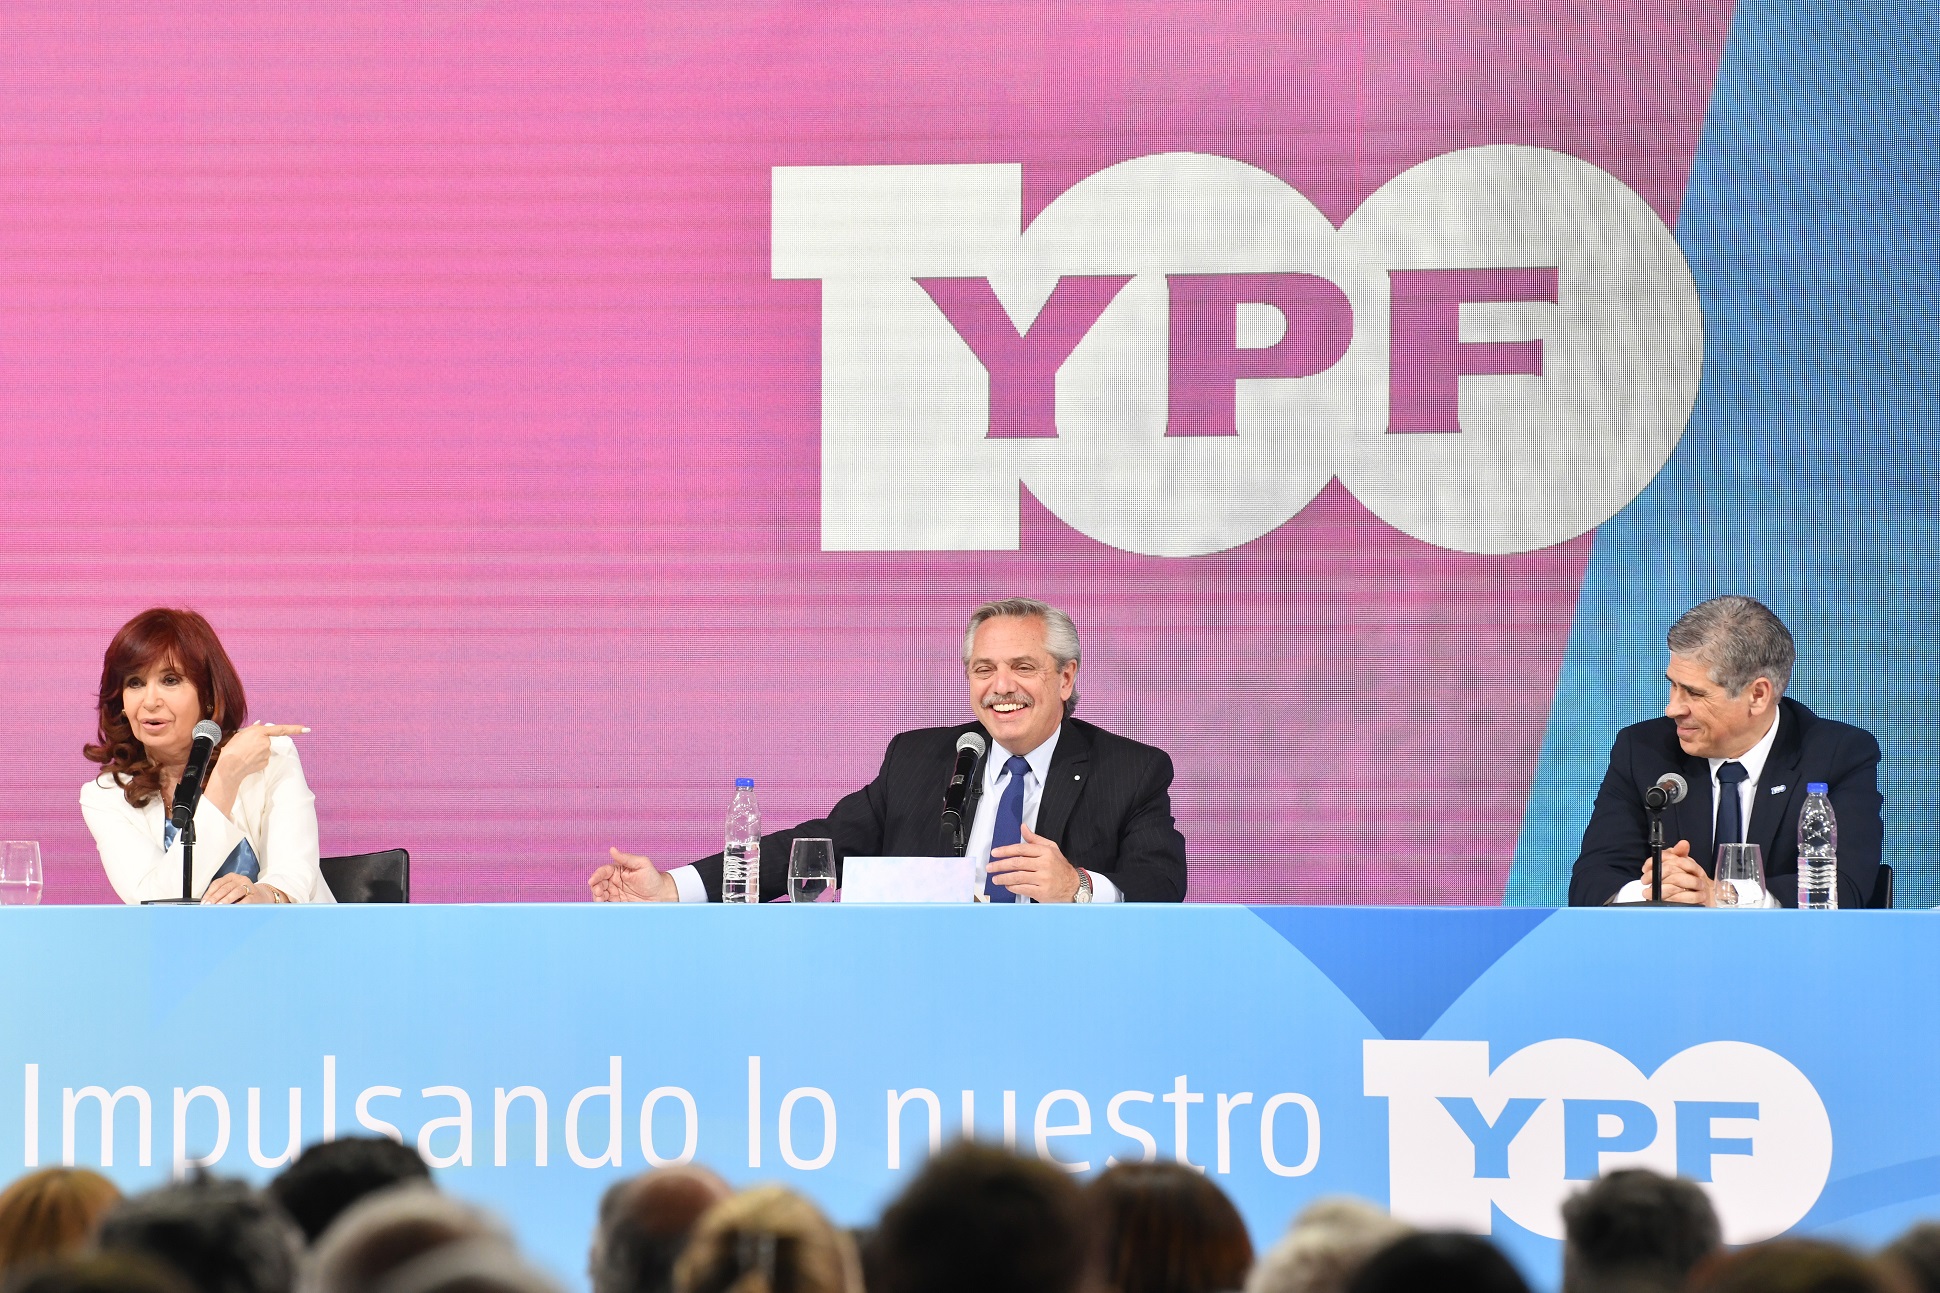 Alberto Fernández: Vamos a seguir apostando al crecimiento, al desarrollo, la producción y exploración de YPF